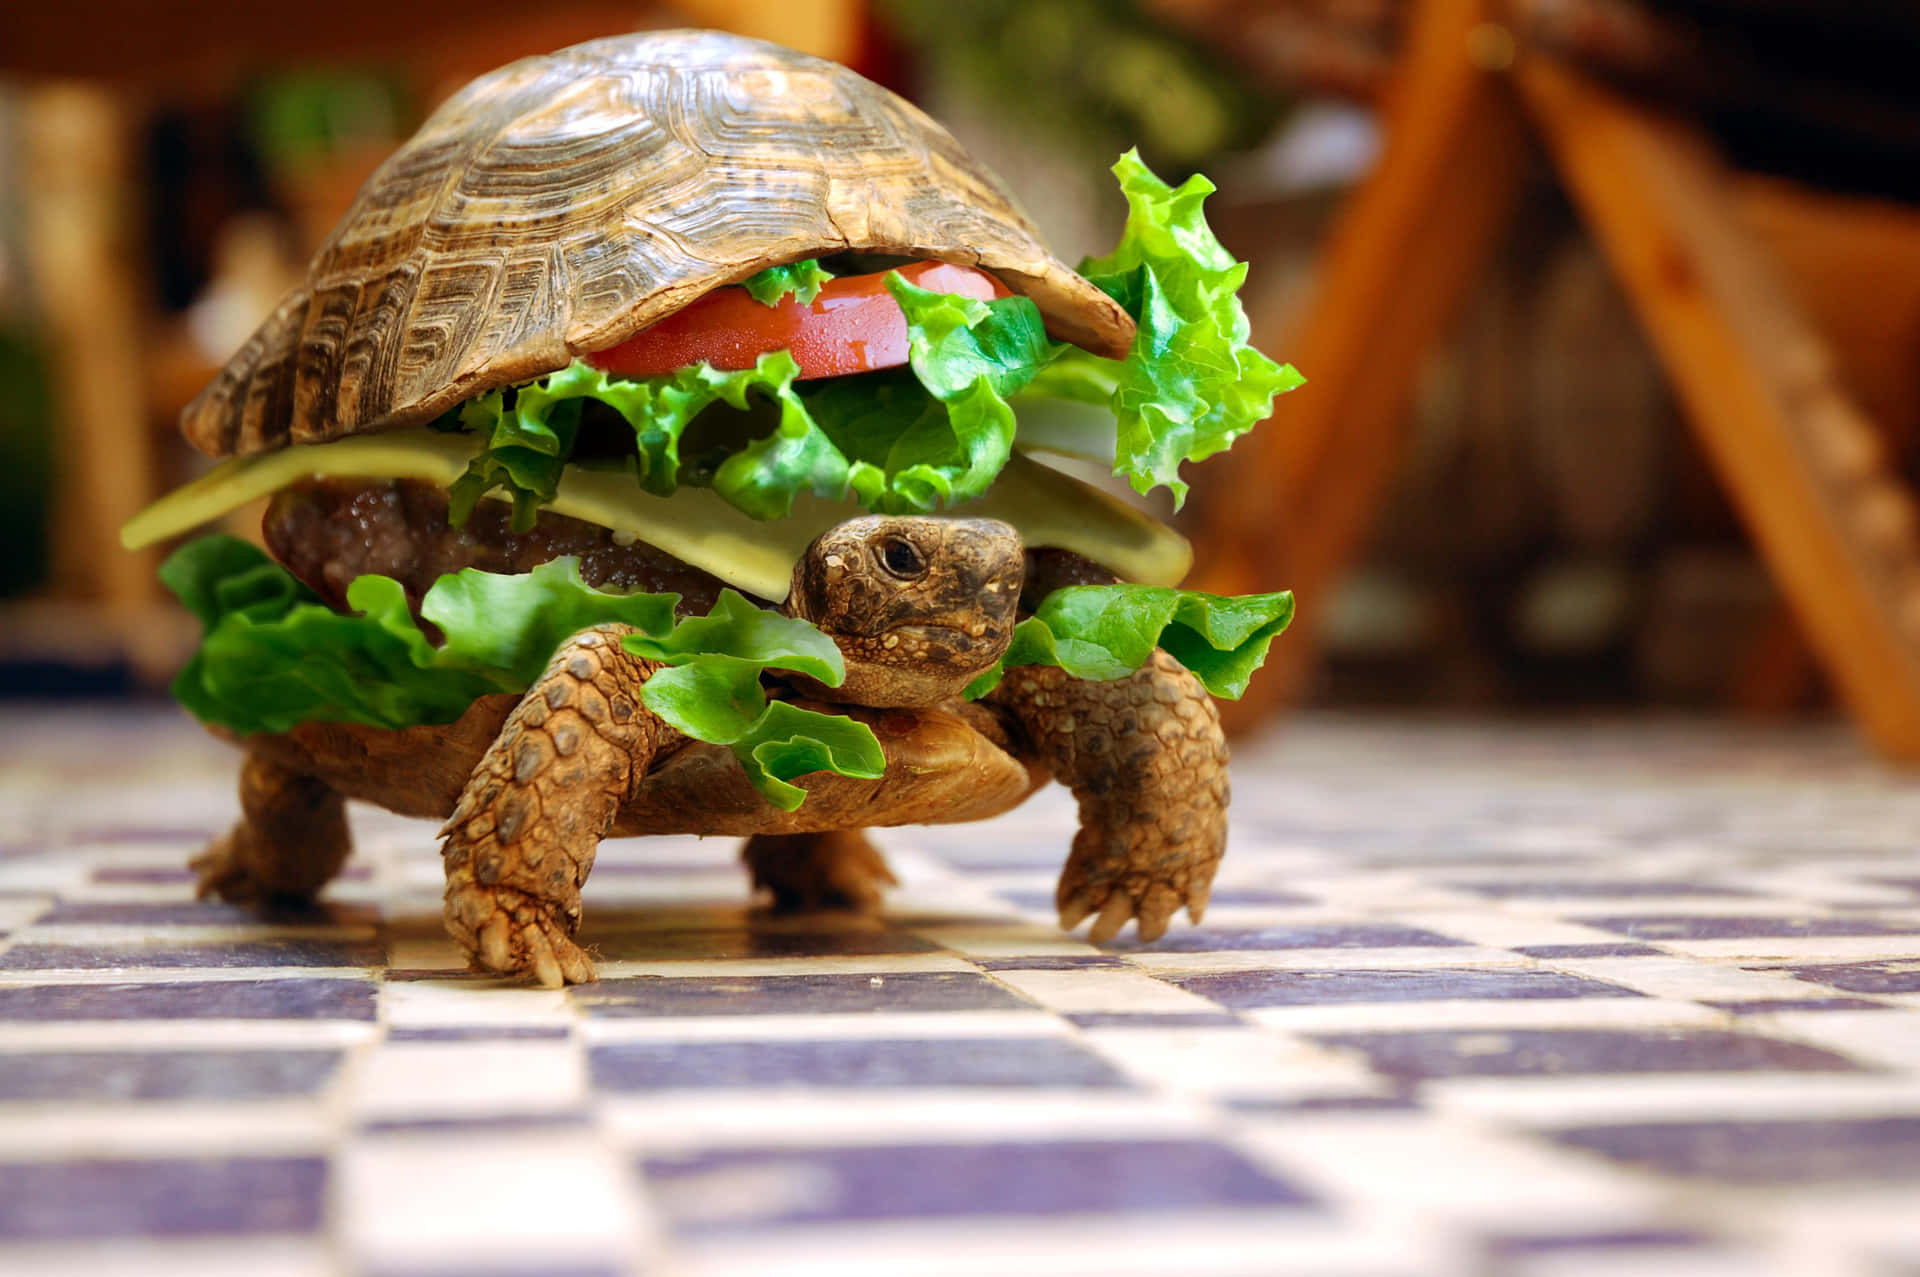 Imagende Una Tortuga En Un Sandwich Realmente Gracioso.